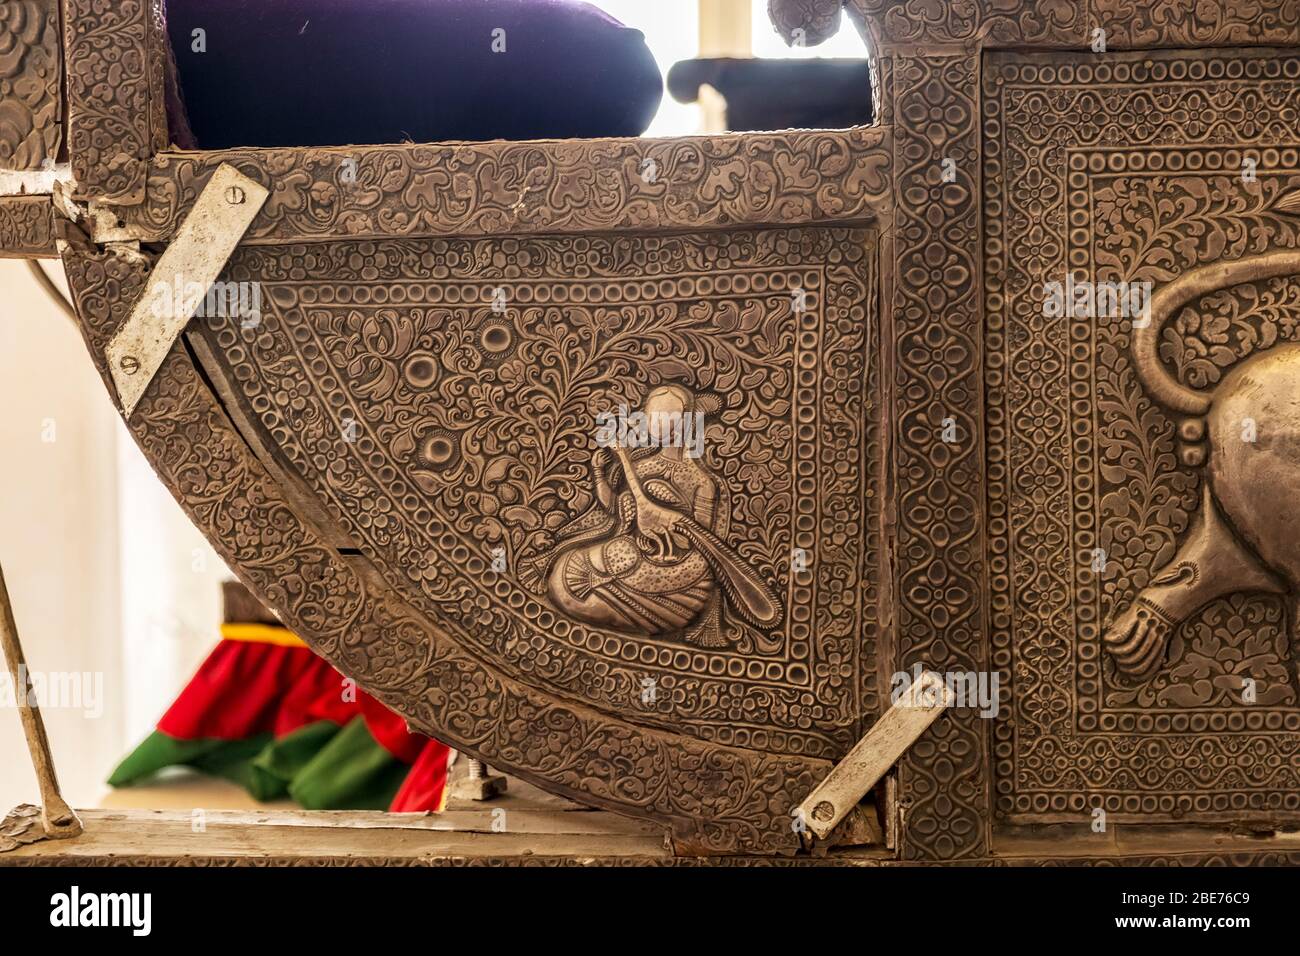 Un exemple de mauvaise pratique de restauration en Inde avec un vieux chariot d'éléphant fixé de manière très invasive Banque D'Images